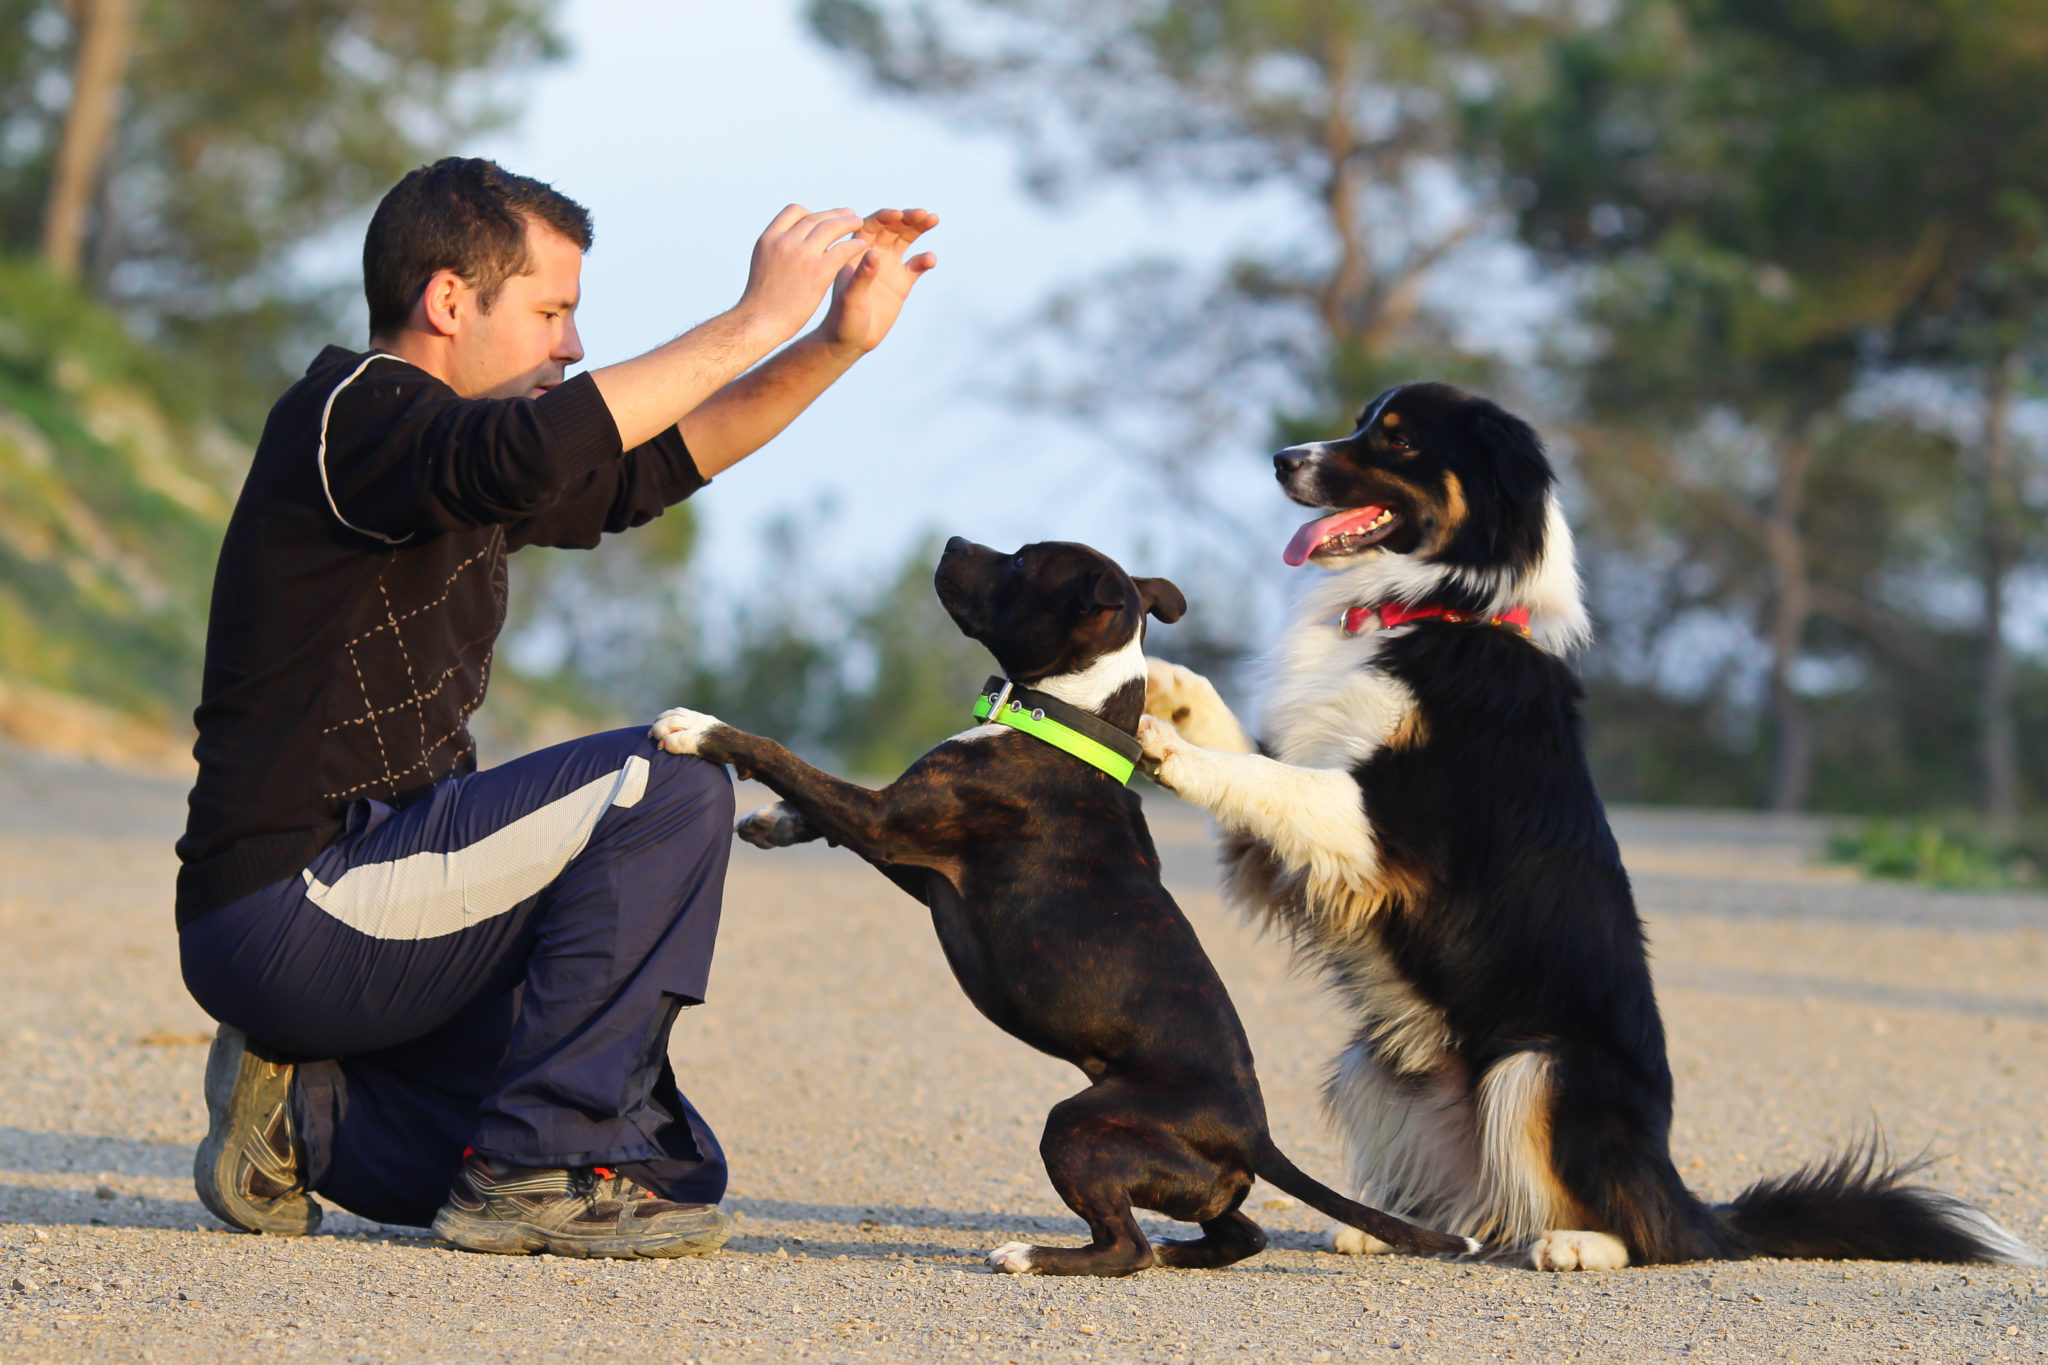 Træning af voksne 7 Tips for rigtig hundetræning